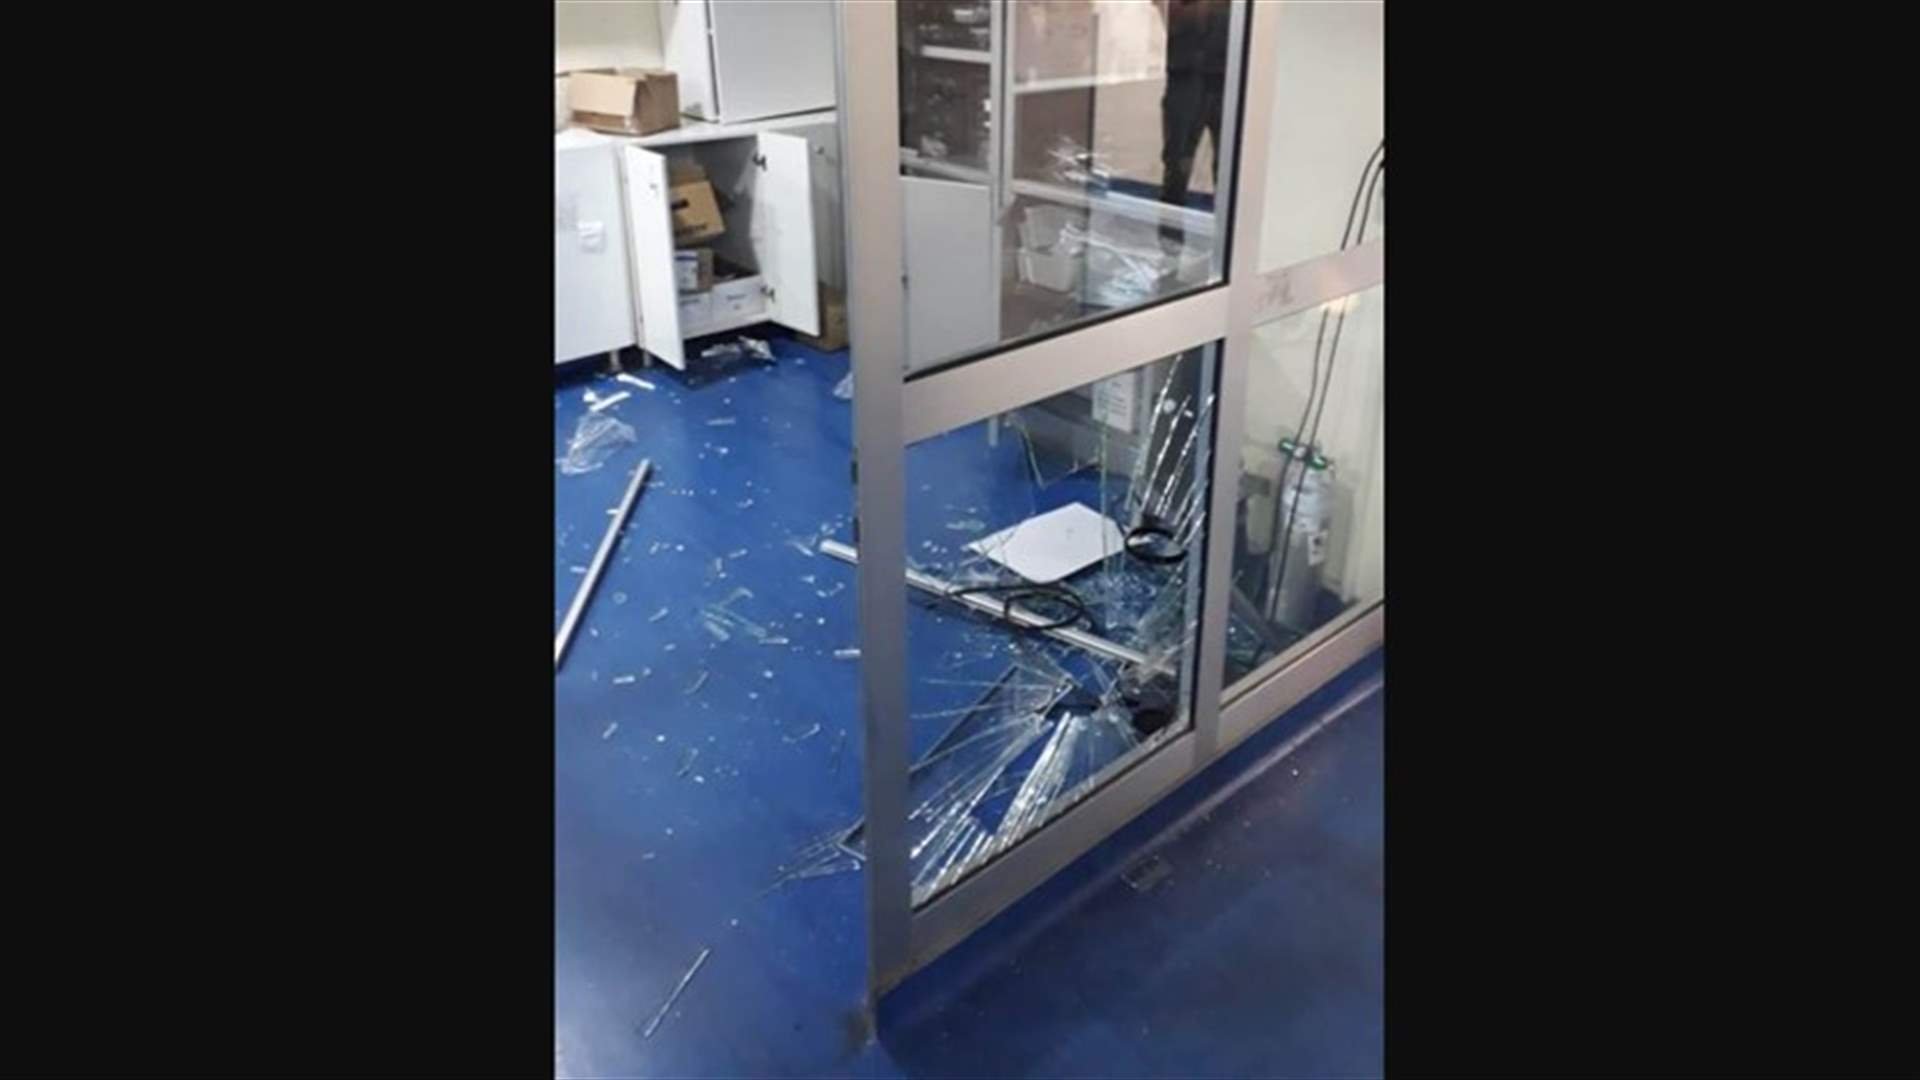 تحطيم زجاج قسم الطوارئ في مستشفى طرابلس بعد وفاة طفل فيه (صور وفيديوهات)